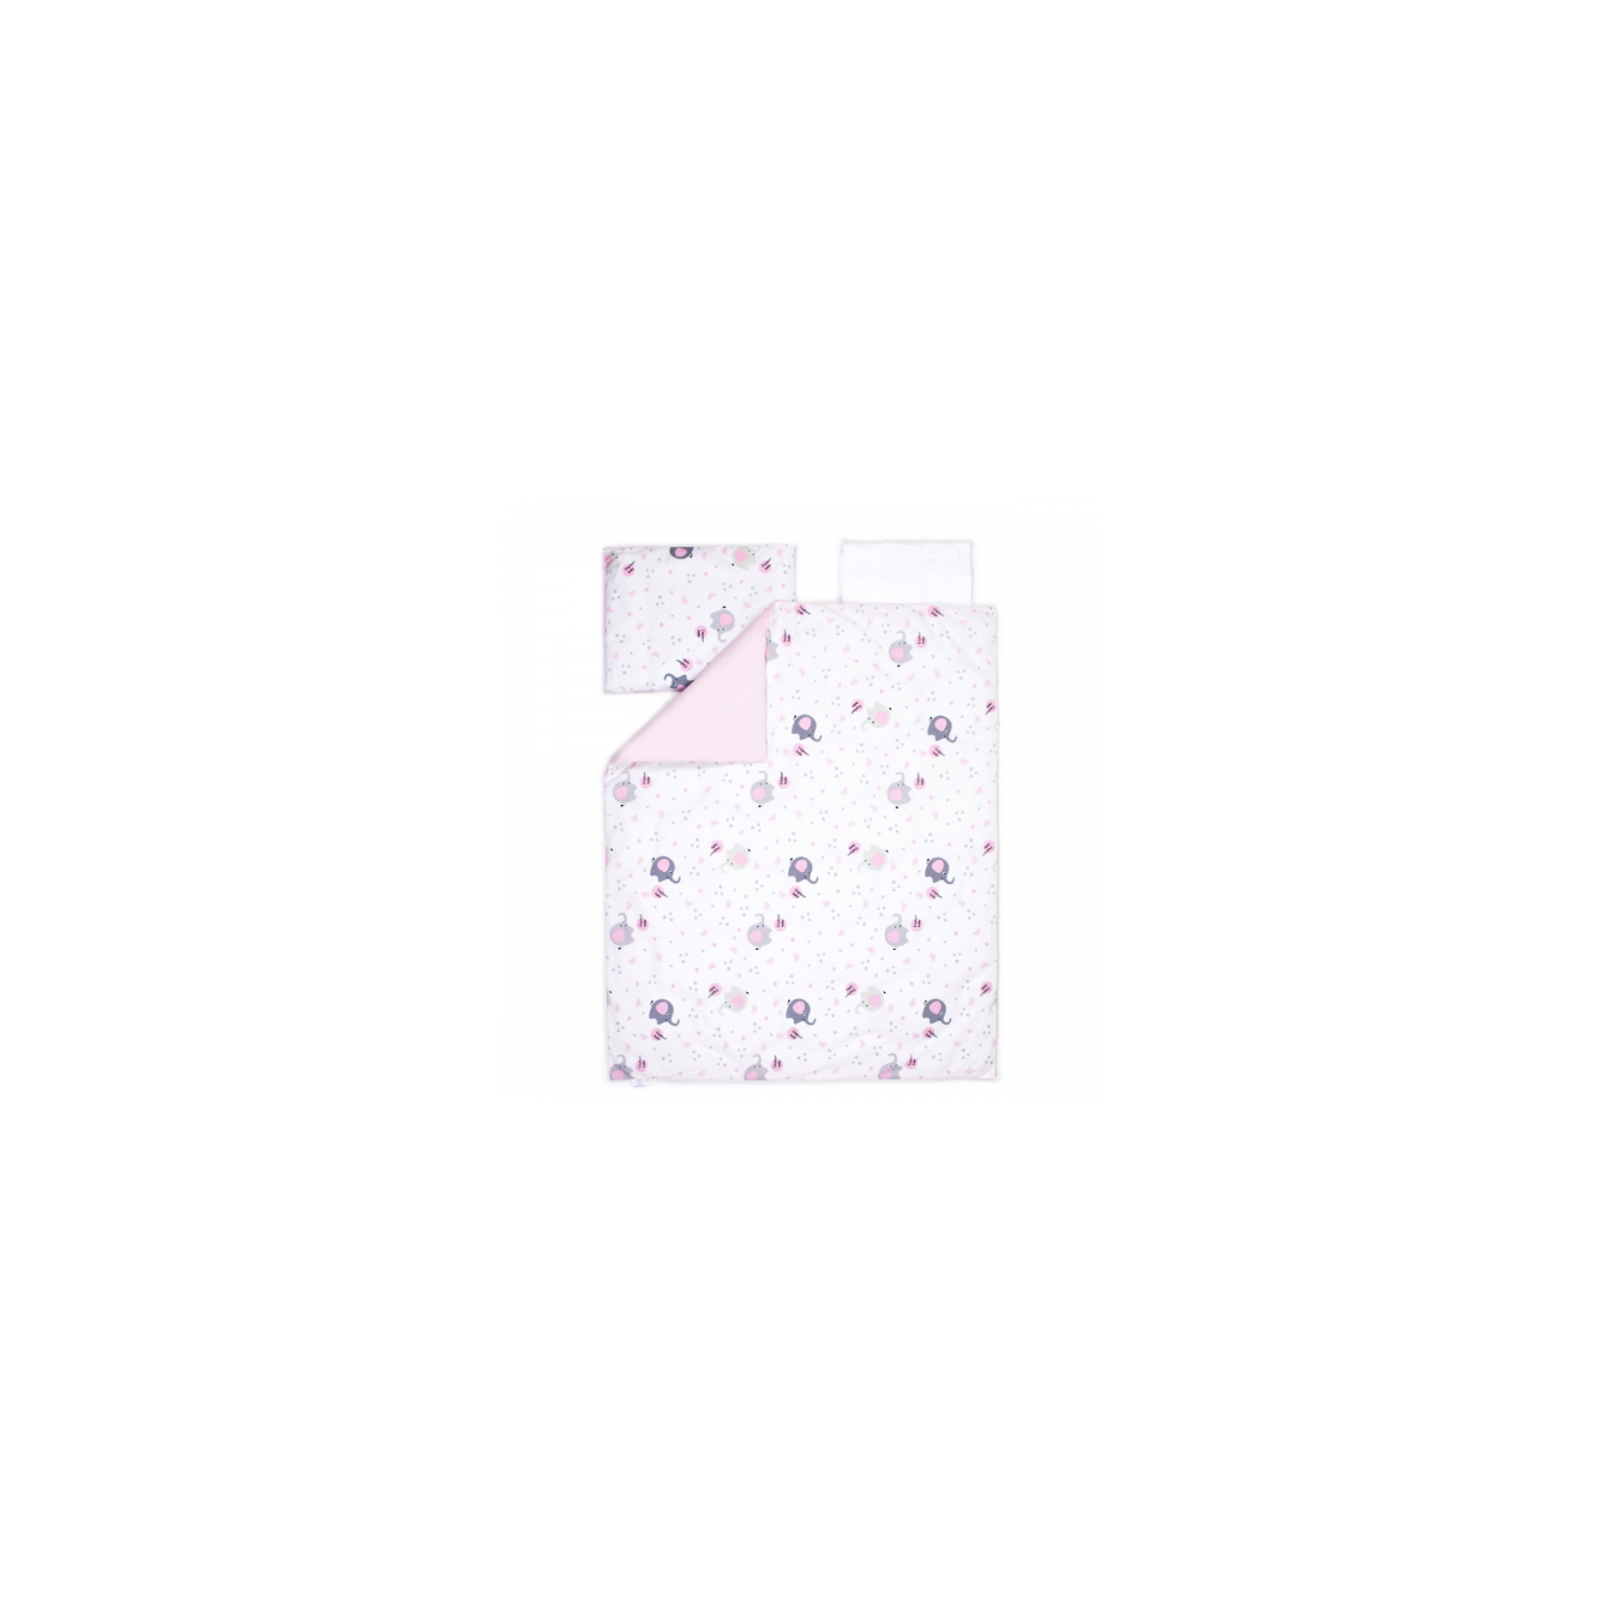 Детский постельный набор Верес Сменный Elephant family pink (3 ед.) (153.3.16)